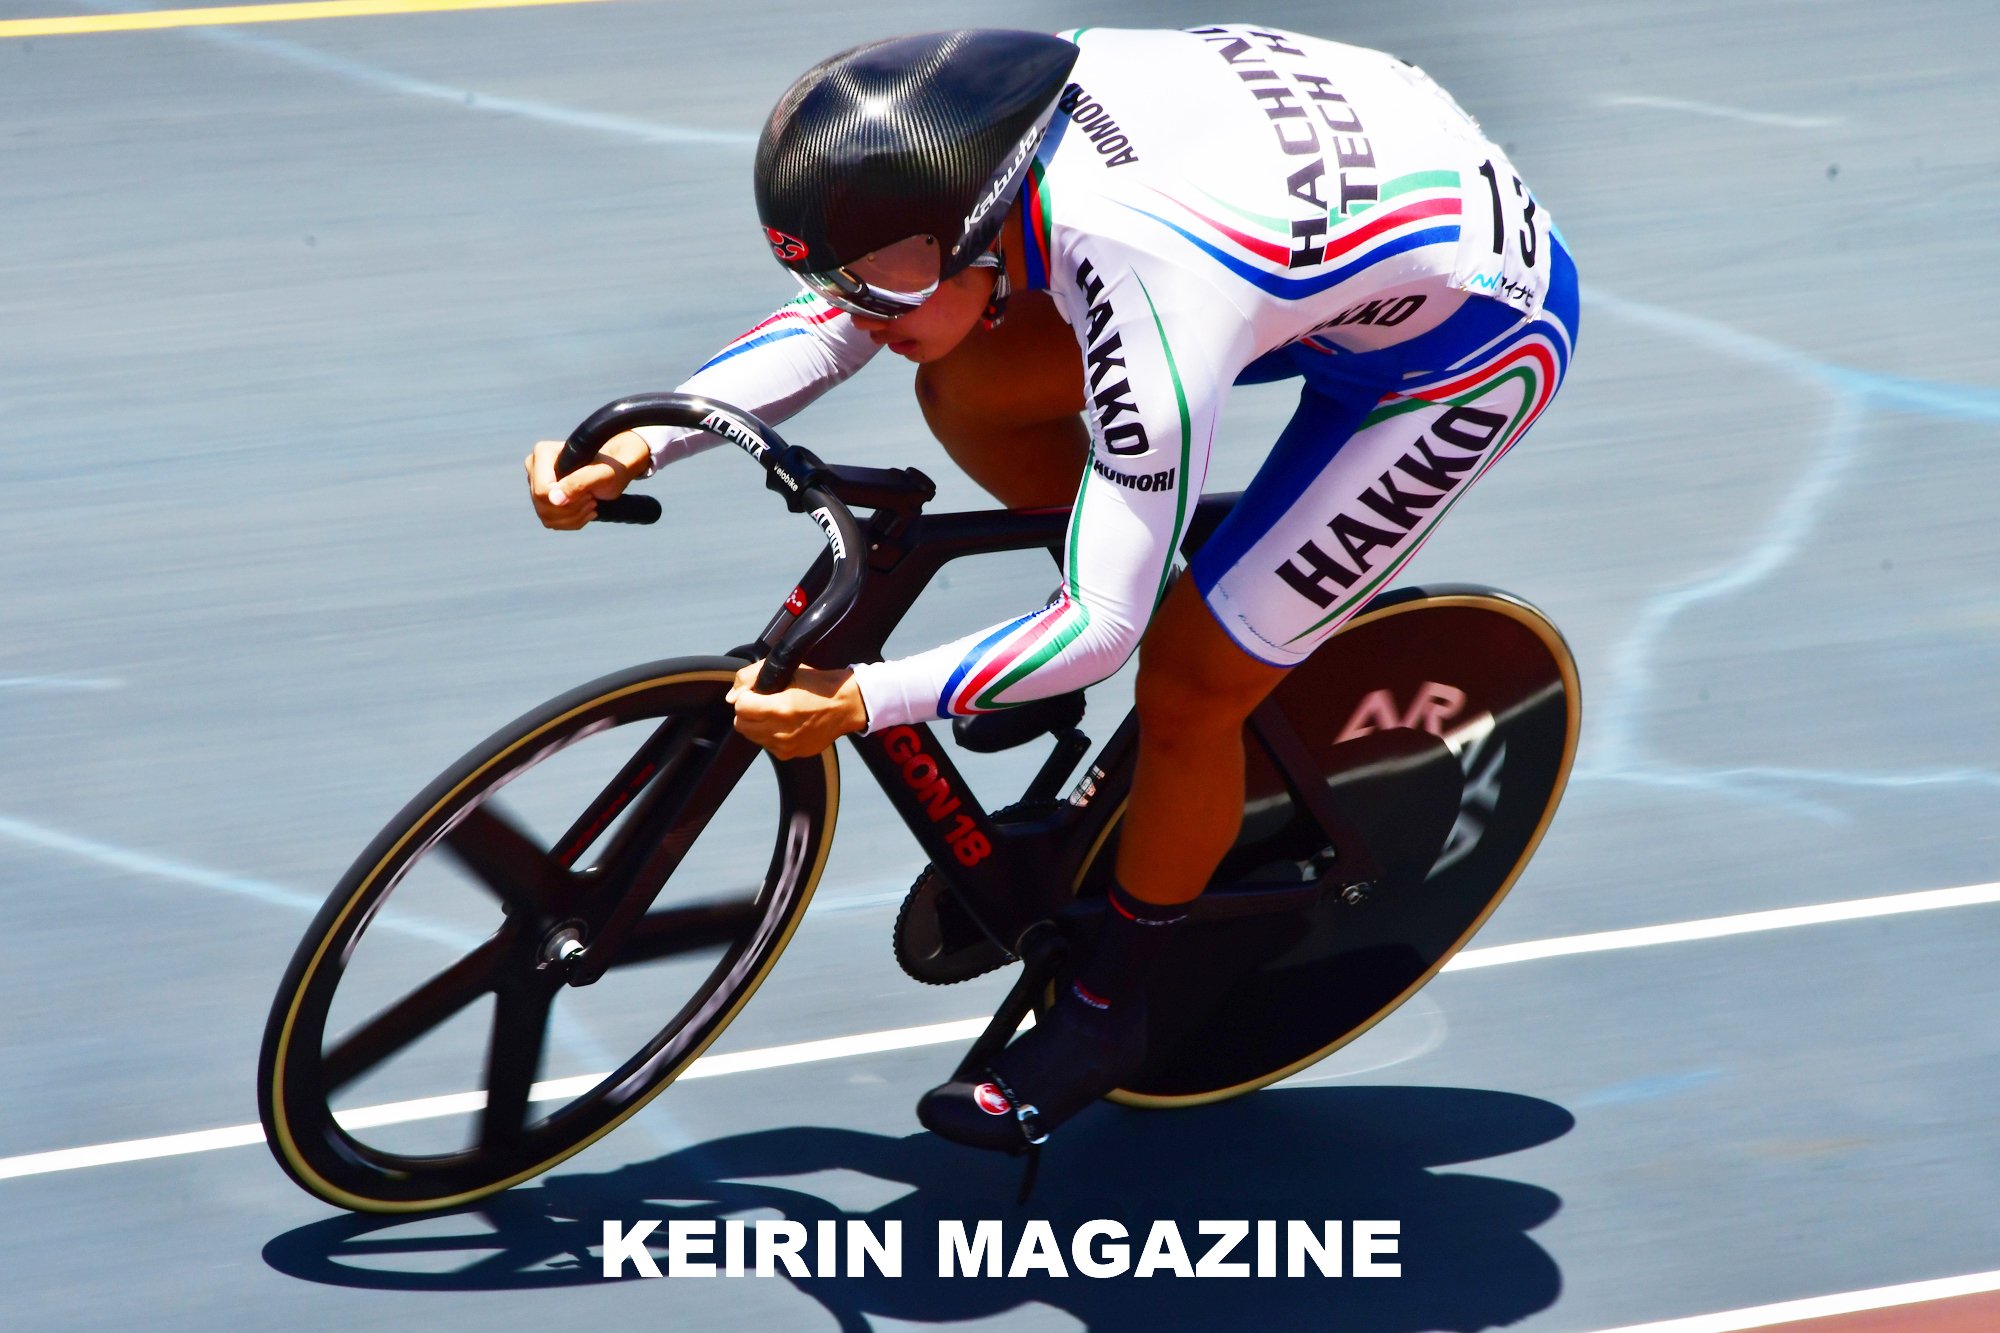 インターハイ21 福井 トラック自転車競技 男子スプリント予選 2 写真 Keirin Magazine Note